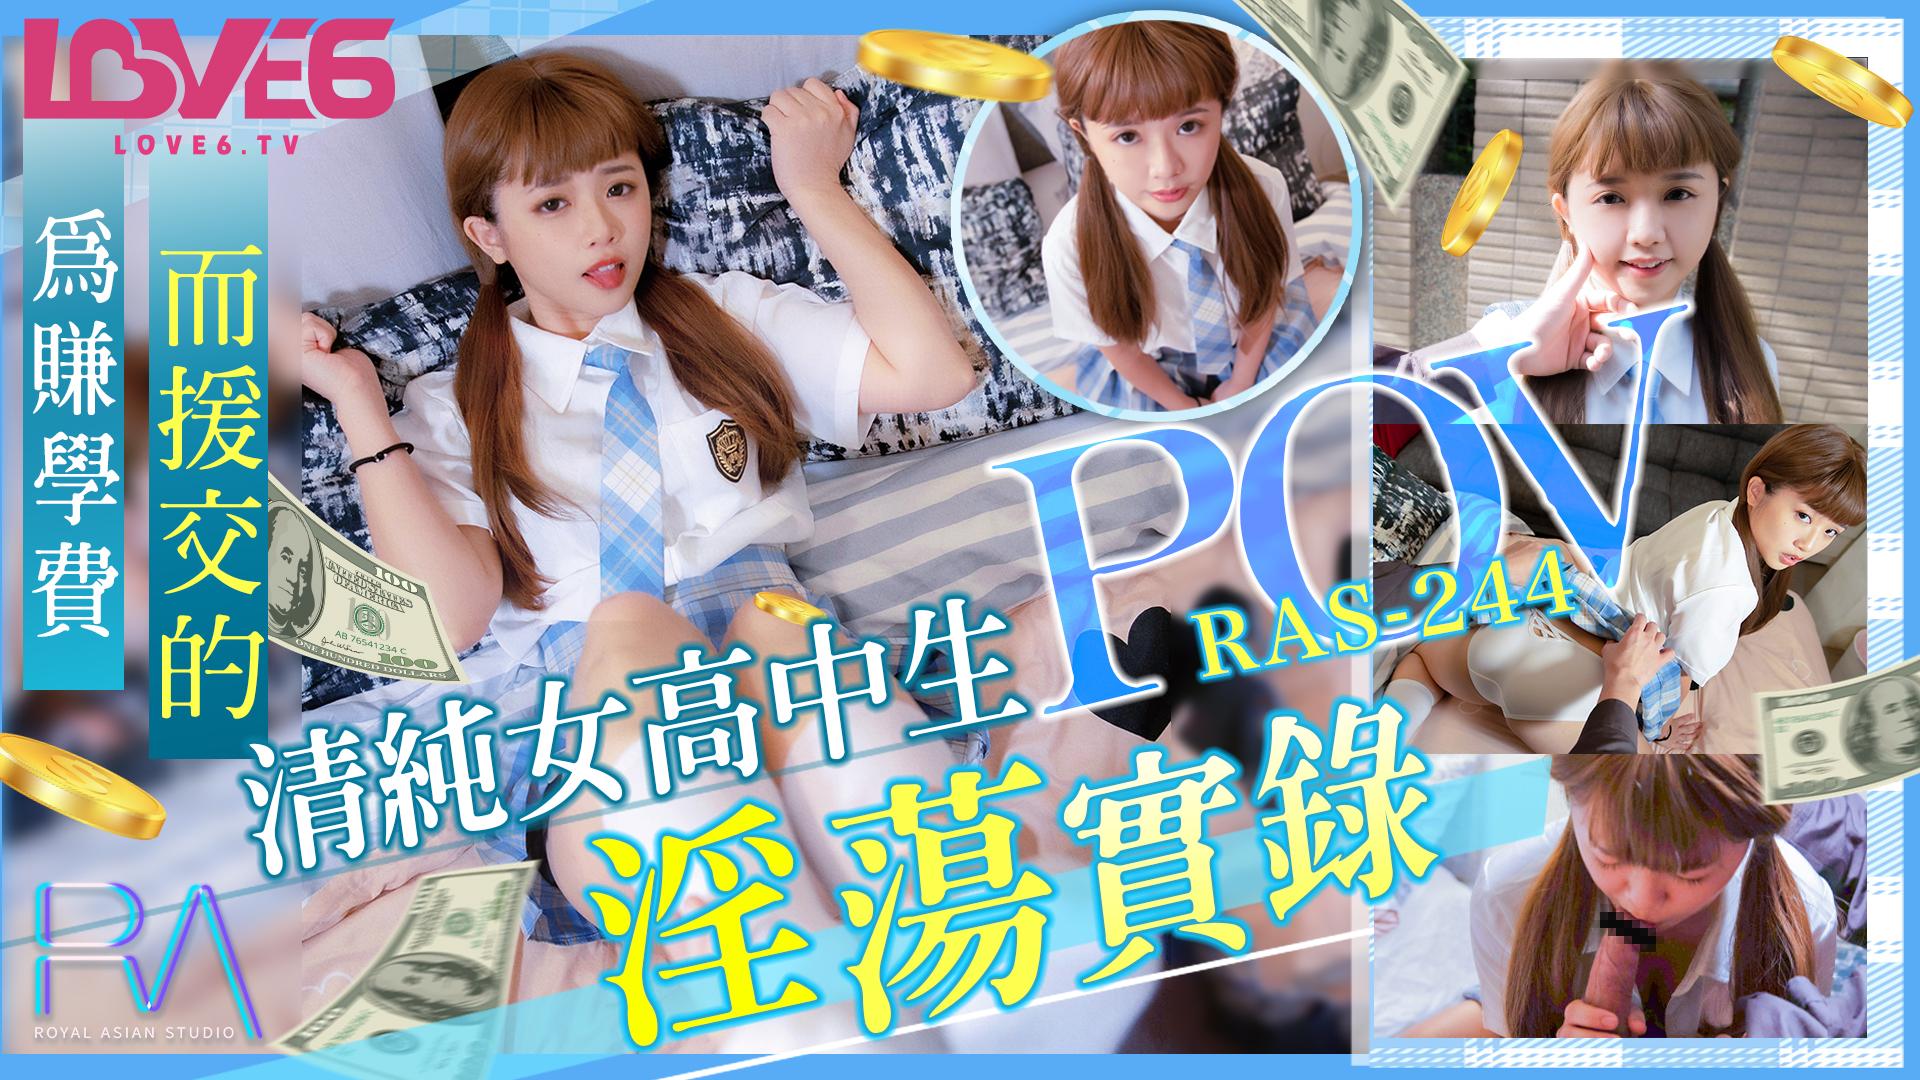 皇家华人 RAS0244 为赚学费而援交的美女高中生淫荡实录